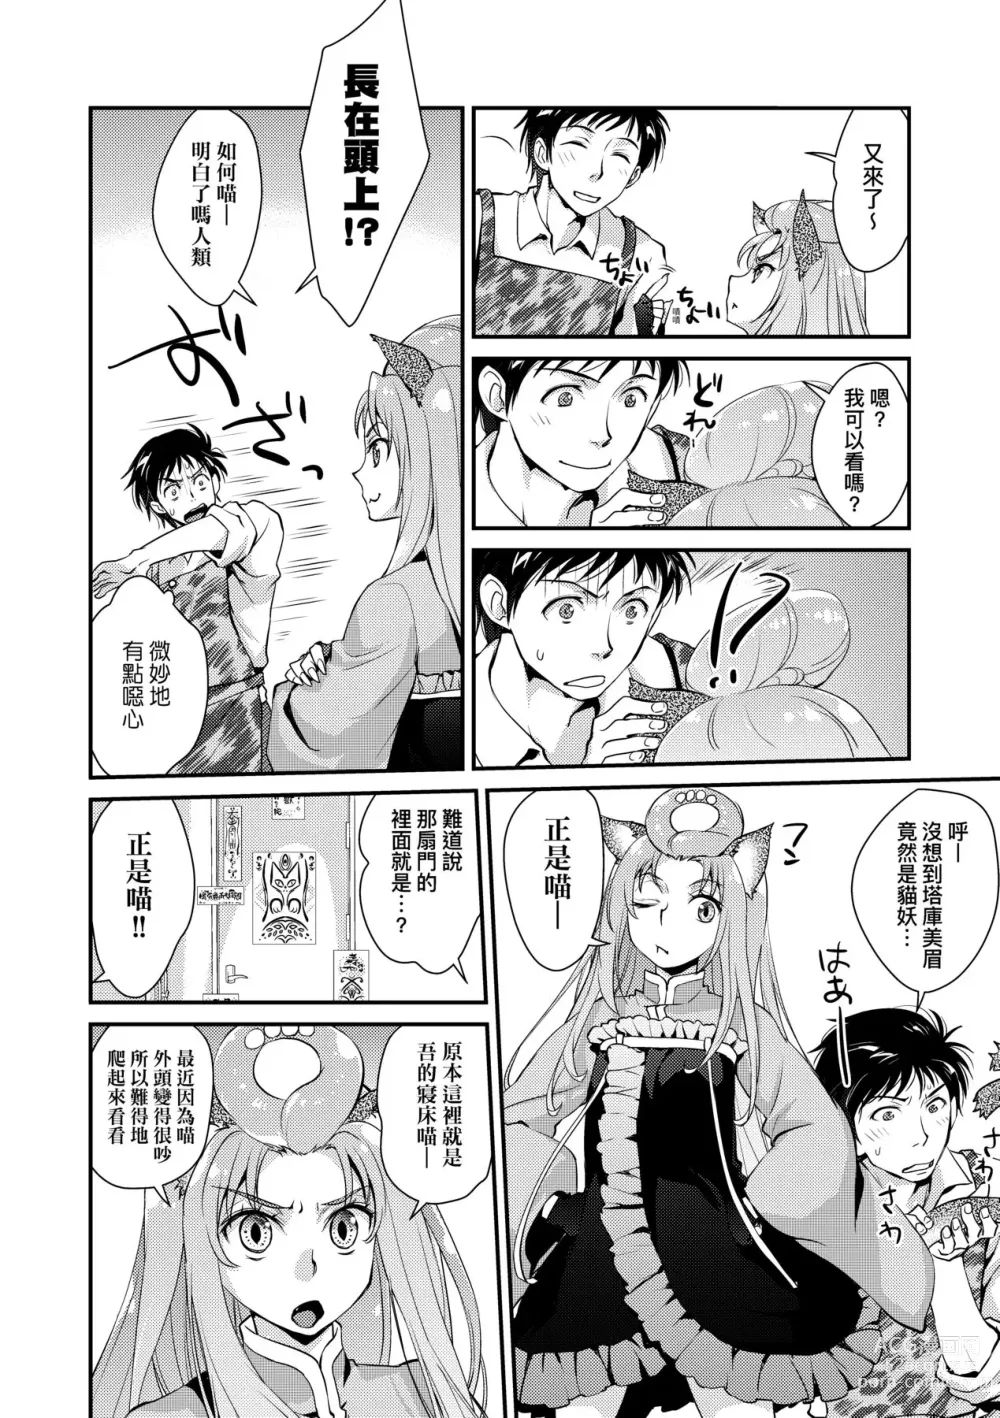 Page 193 of manga Echiechi JK Houimou (decensored)